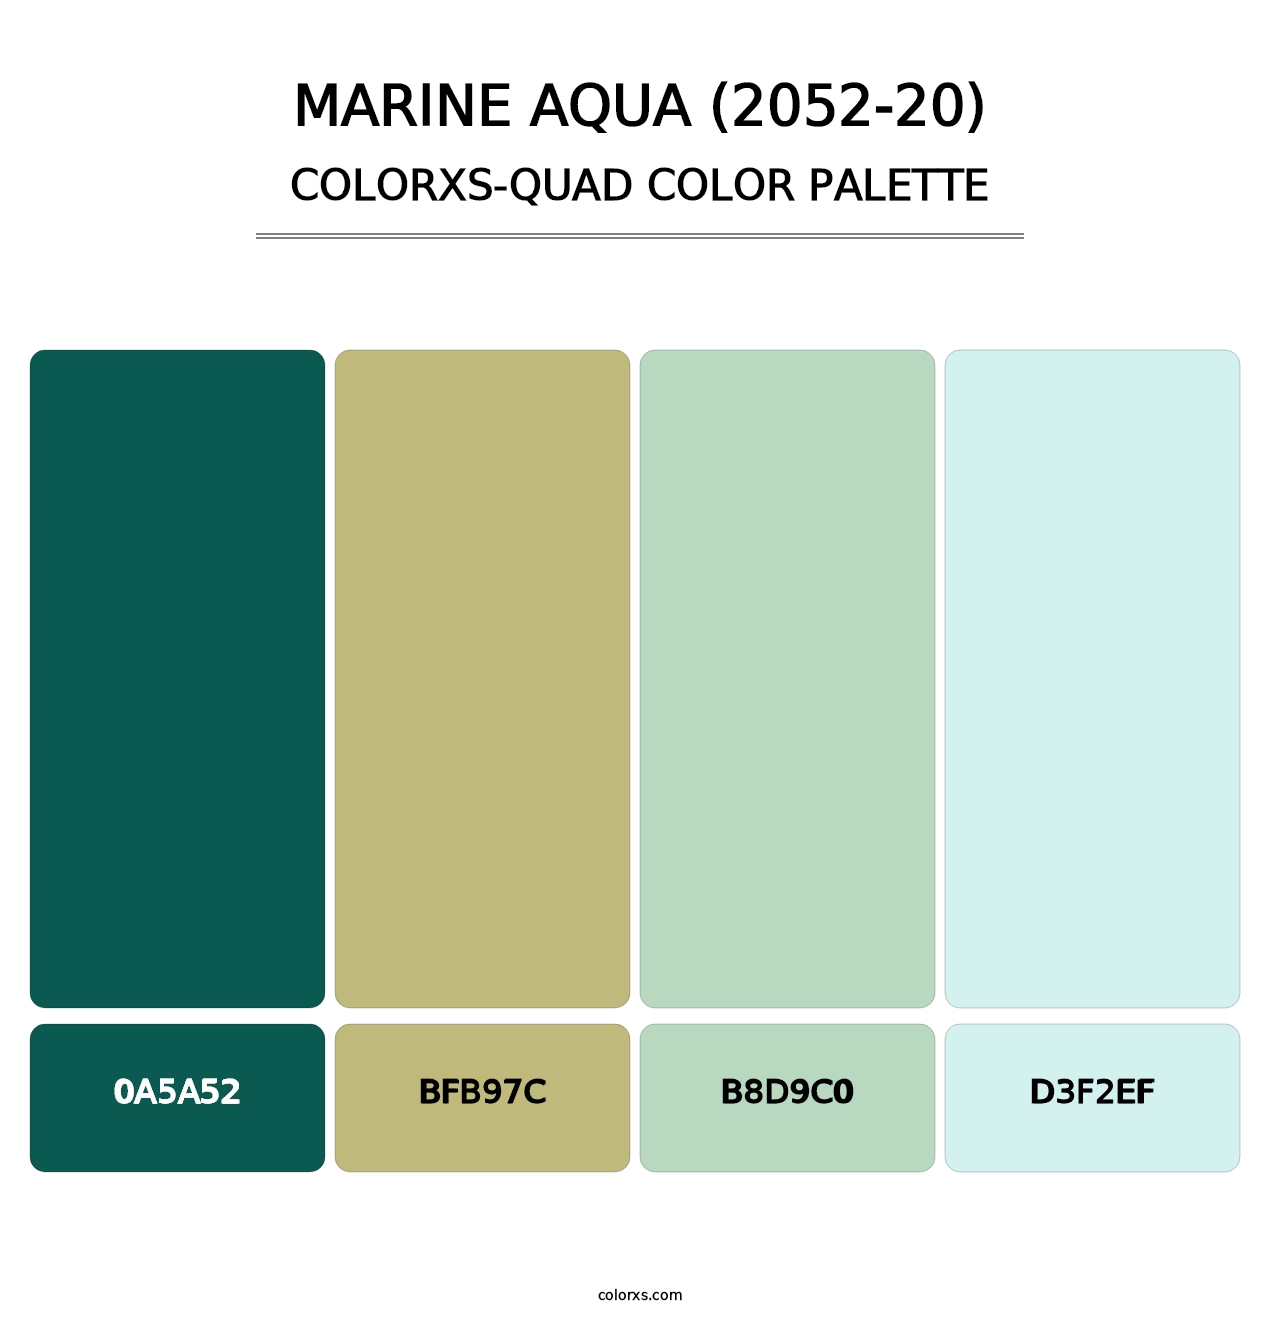 Marine Aqua (2052-20) - Colorxs Quad Palette